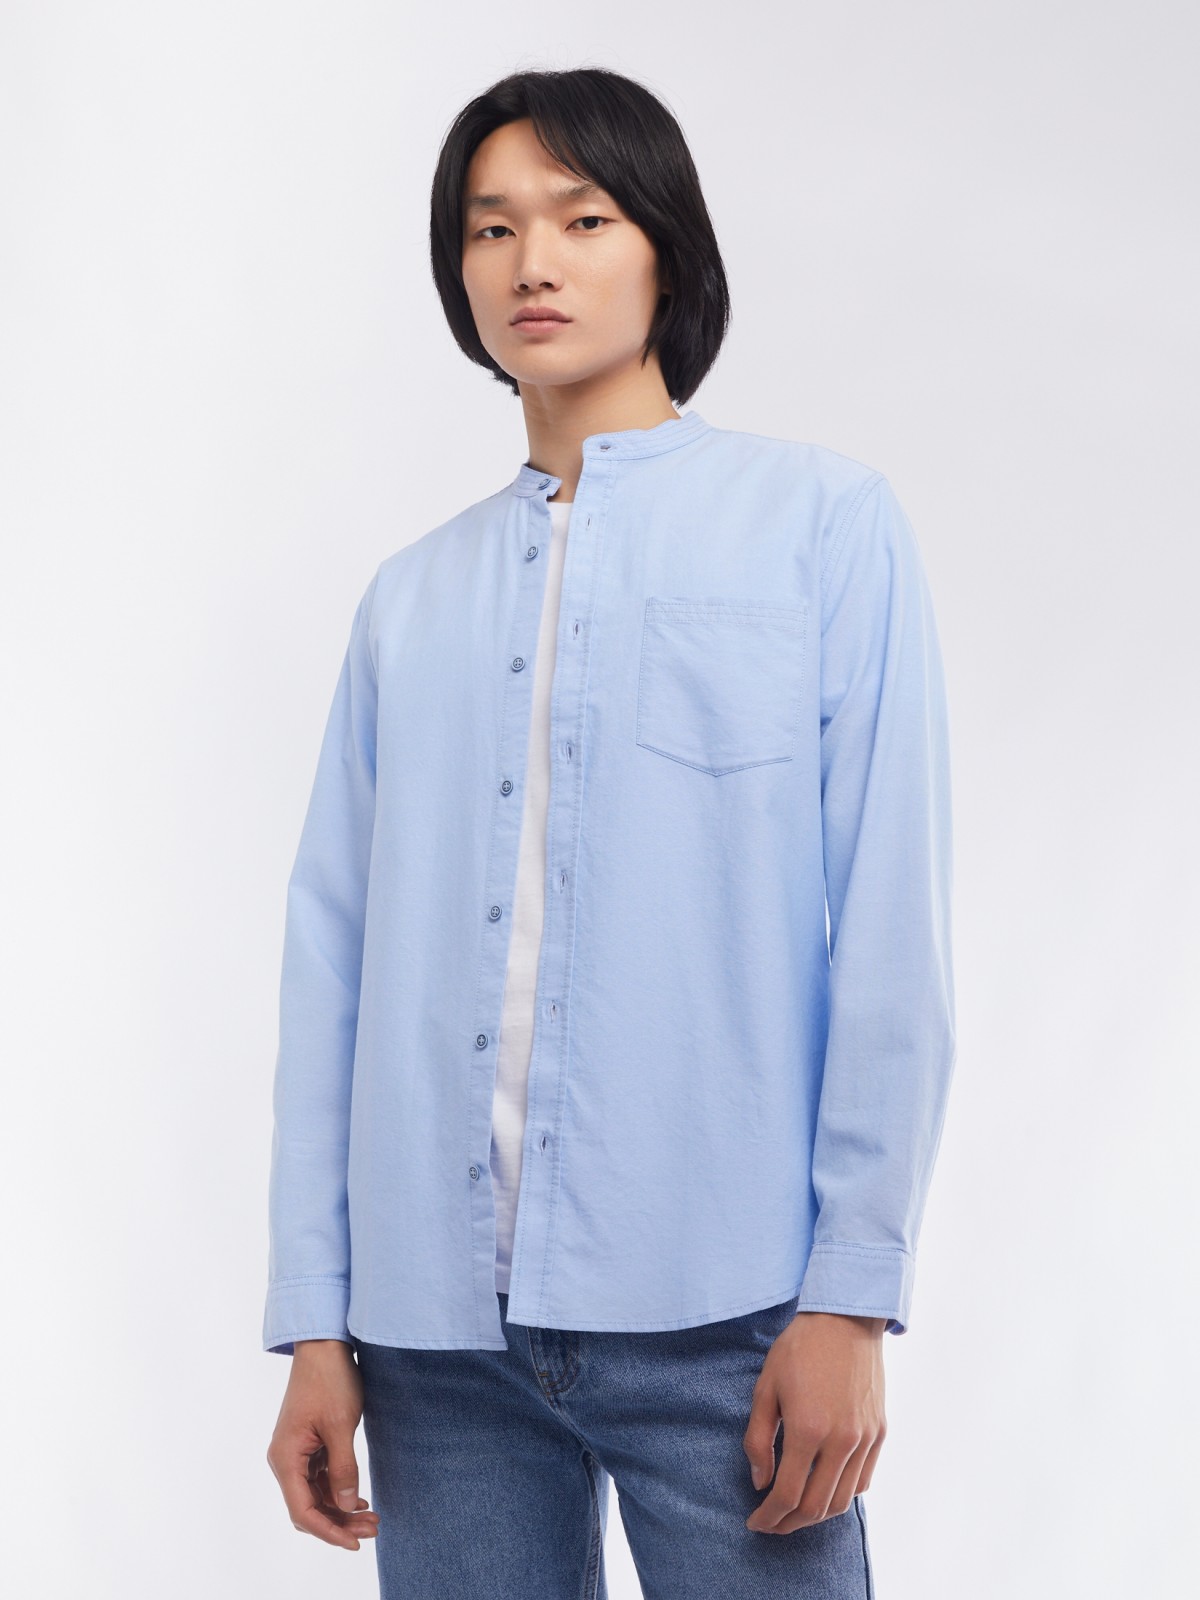 Офисная рубашка из хлопка с воротником-стойкой и длинным рукавом zolla 014122159033, цвет светло-голубой, размер S - фото 1